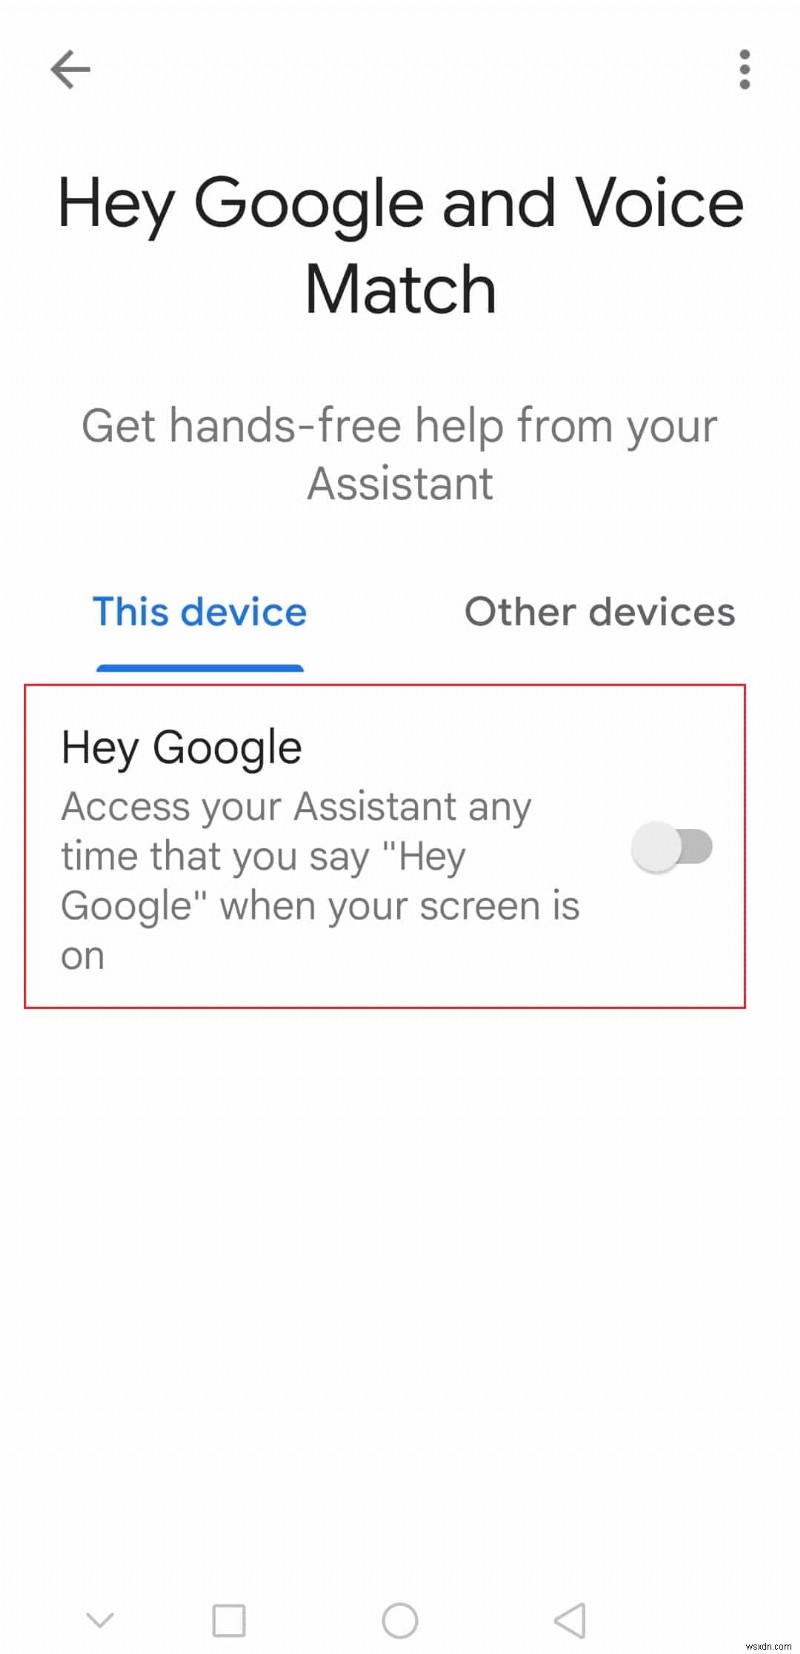 ฉันจะเปิดหรือปิด Google Assistant บน Android ได้อย่างไร